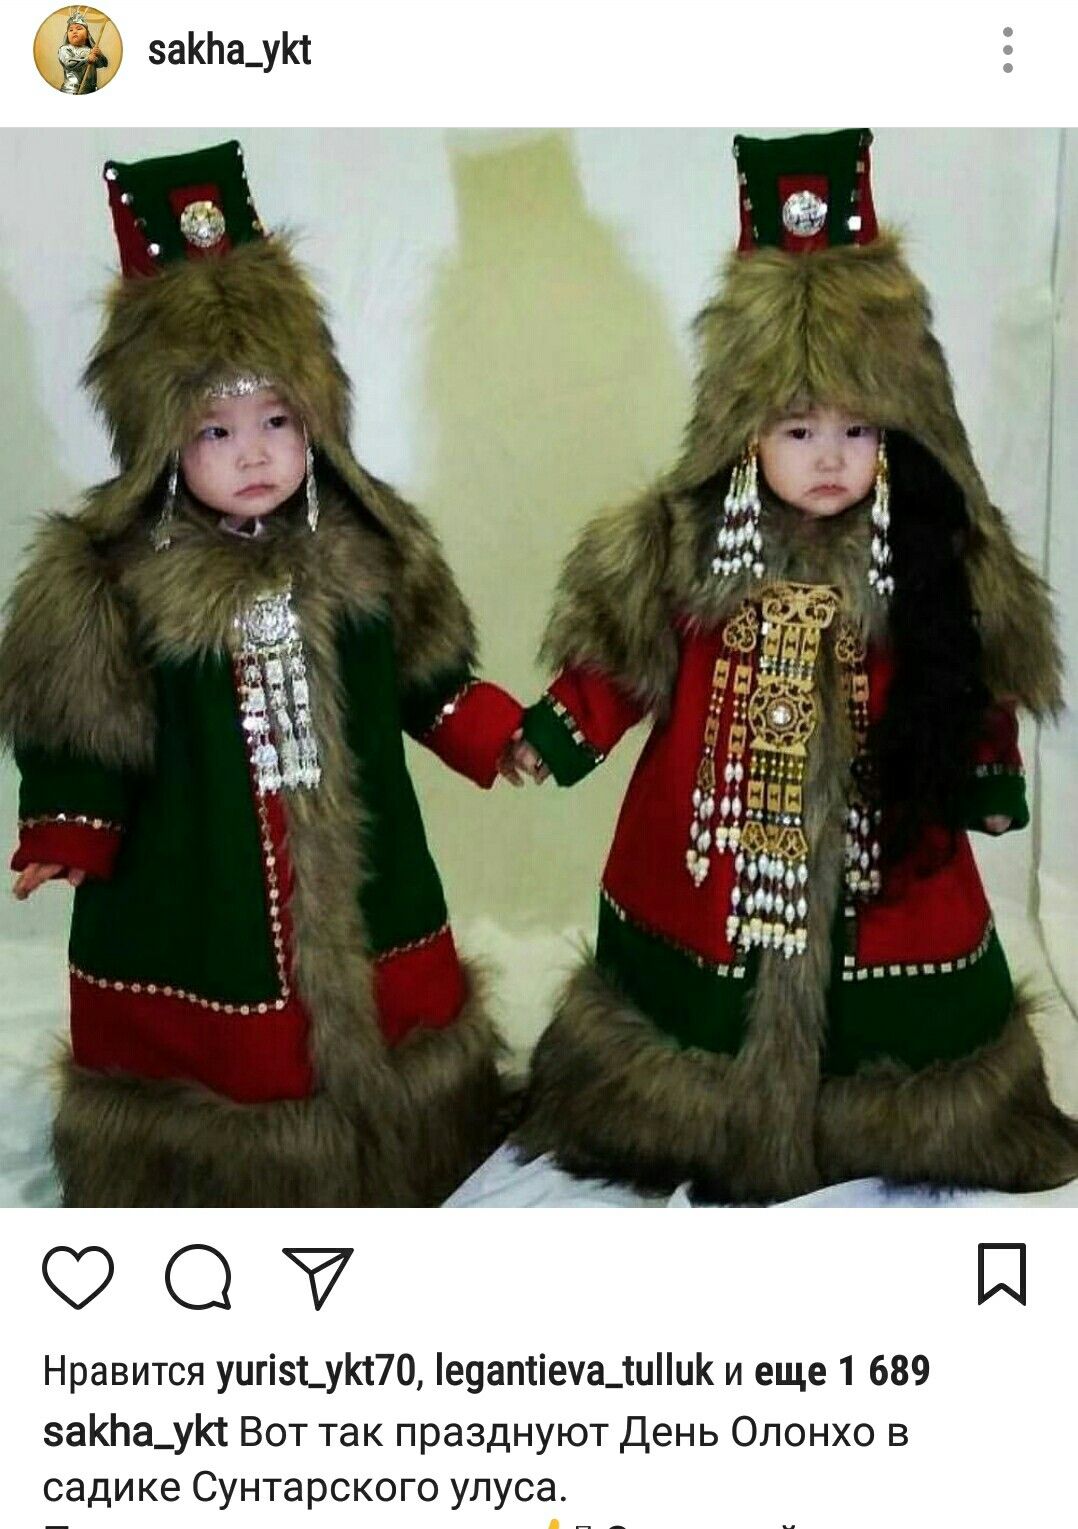 Национальный костюм якутов